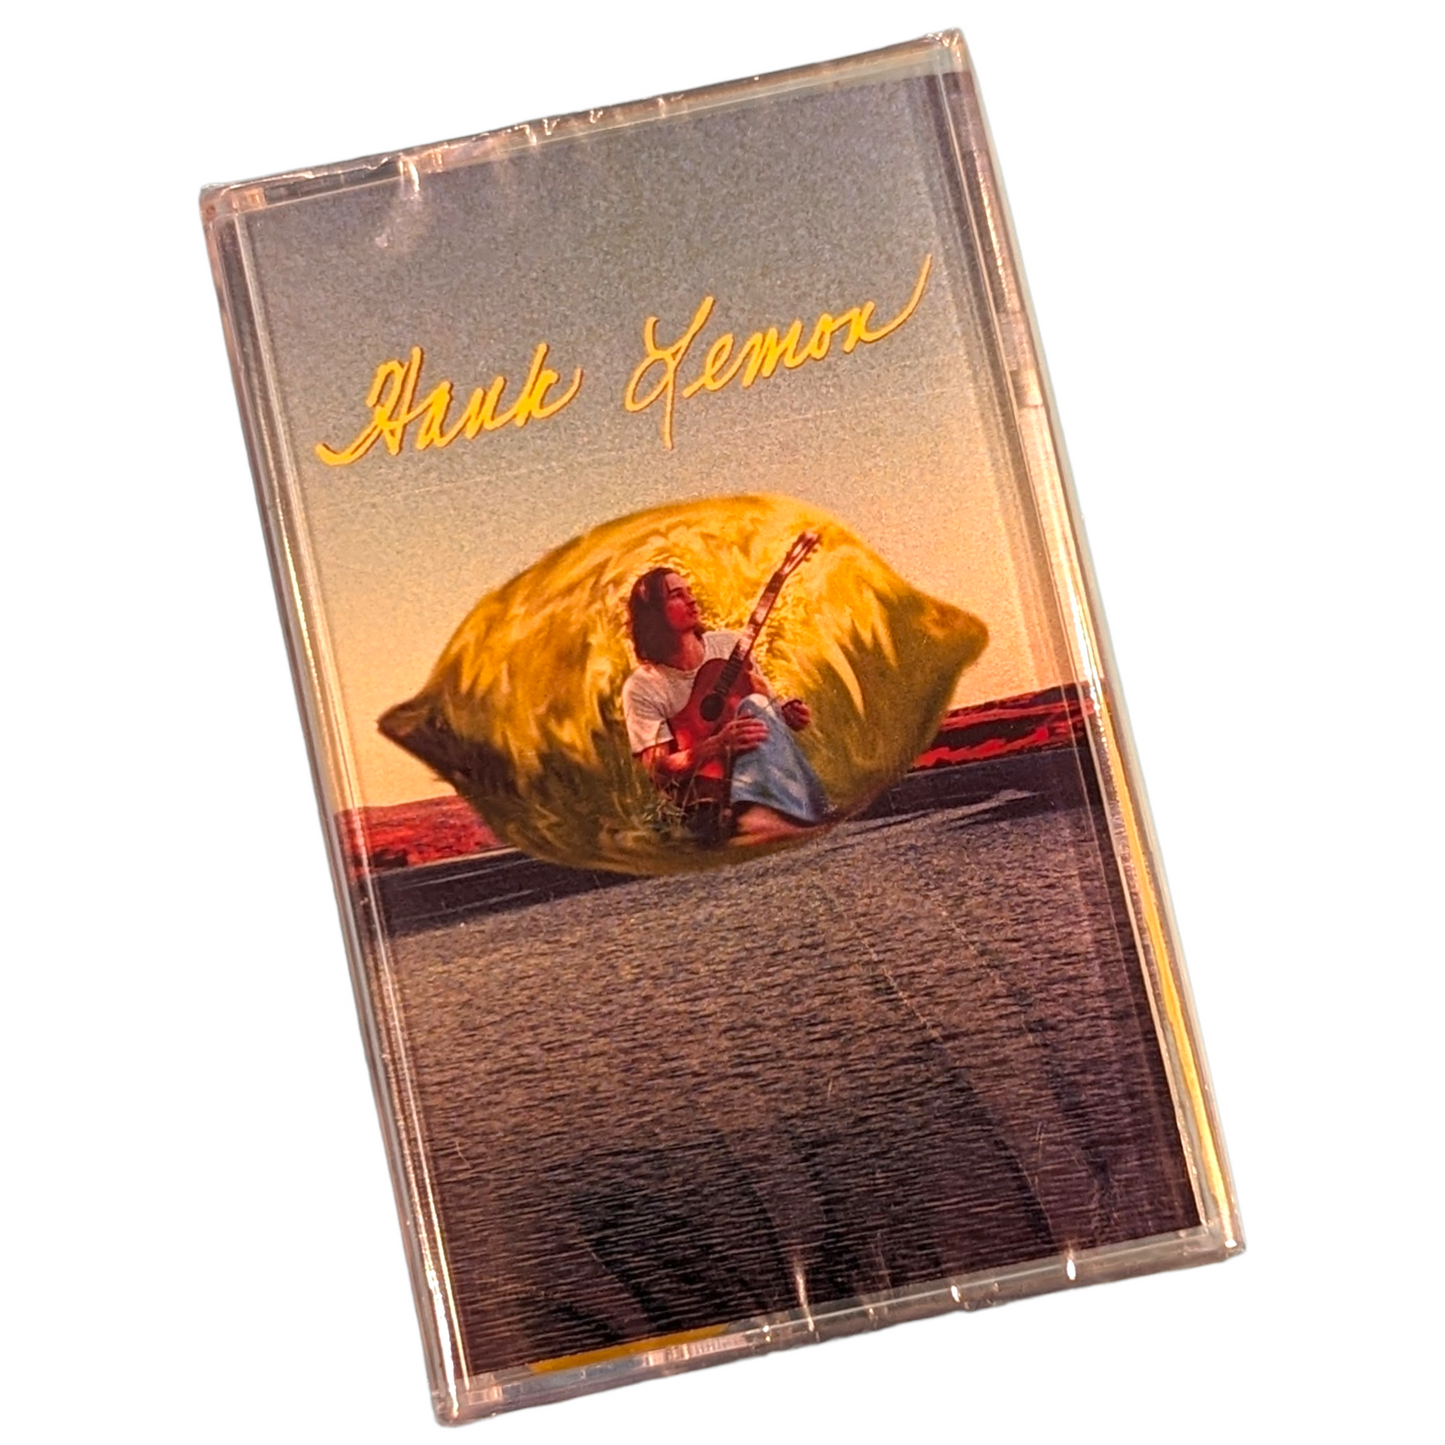 Hank Lemon Casette Tape